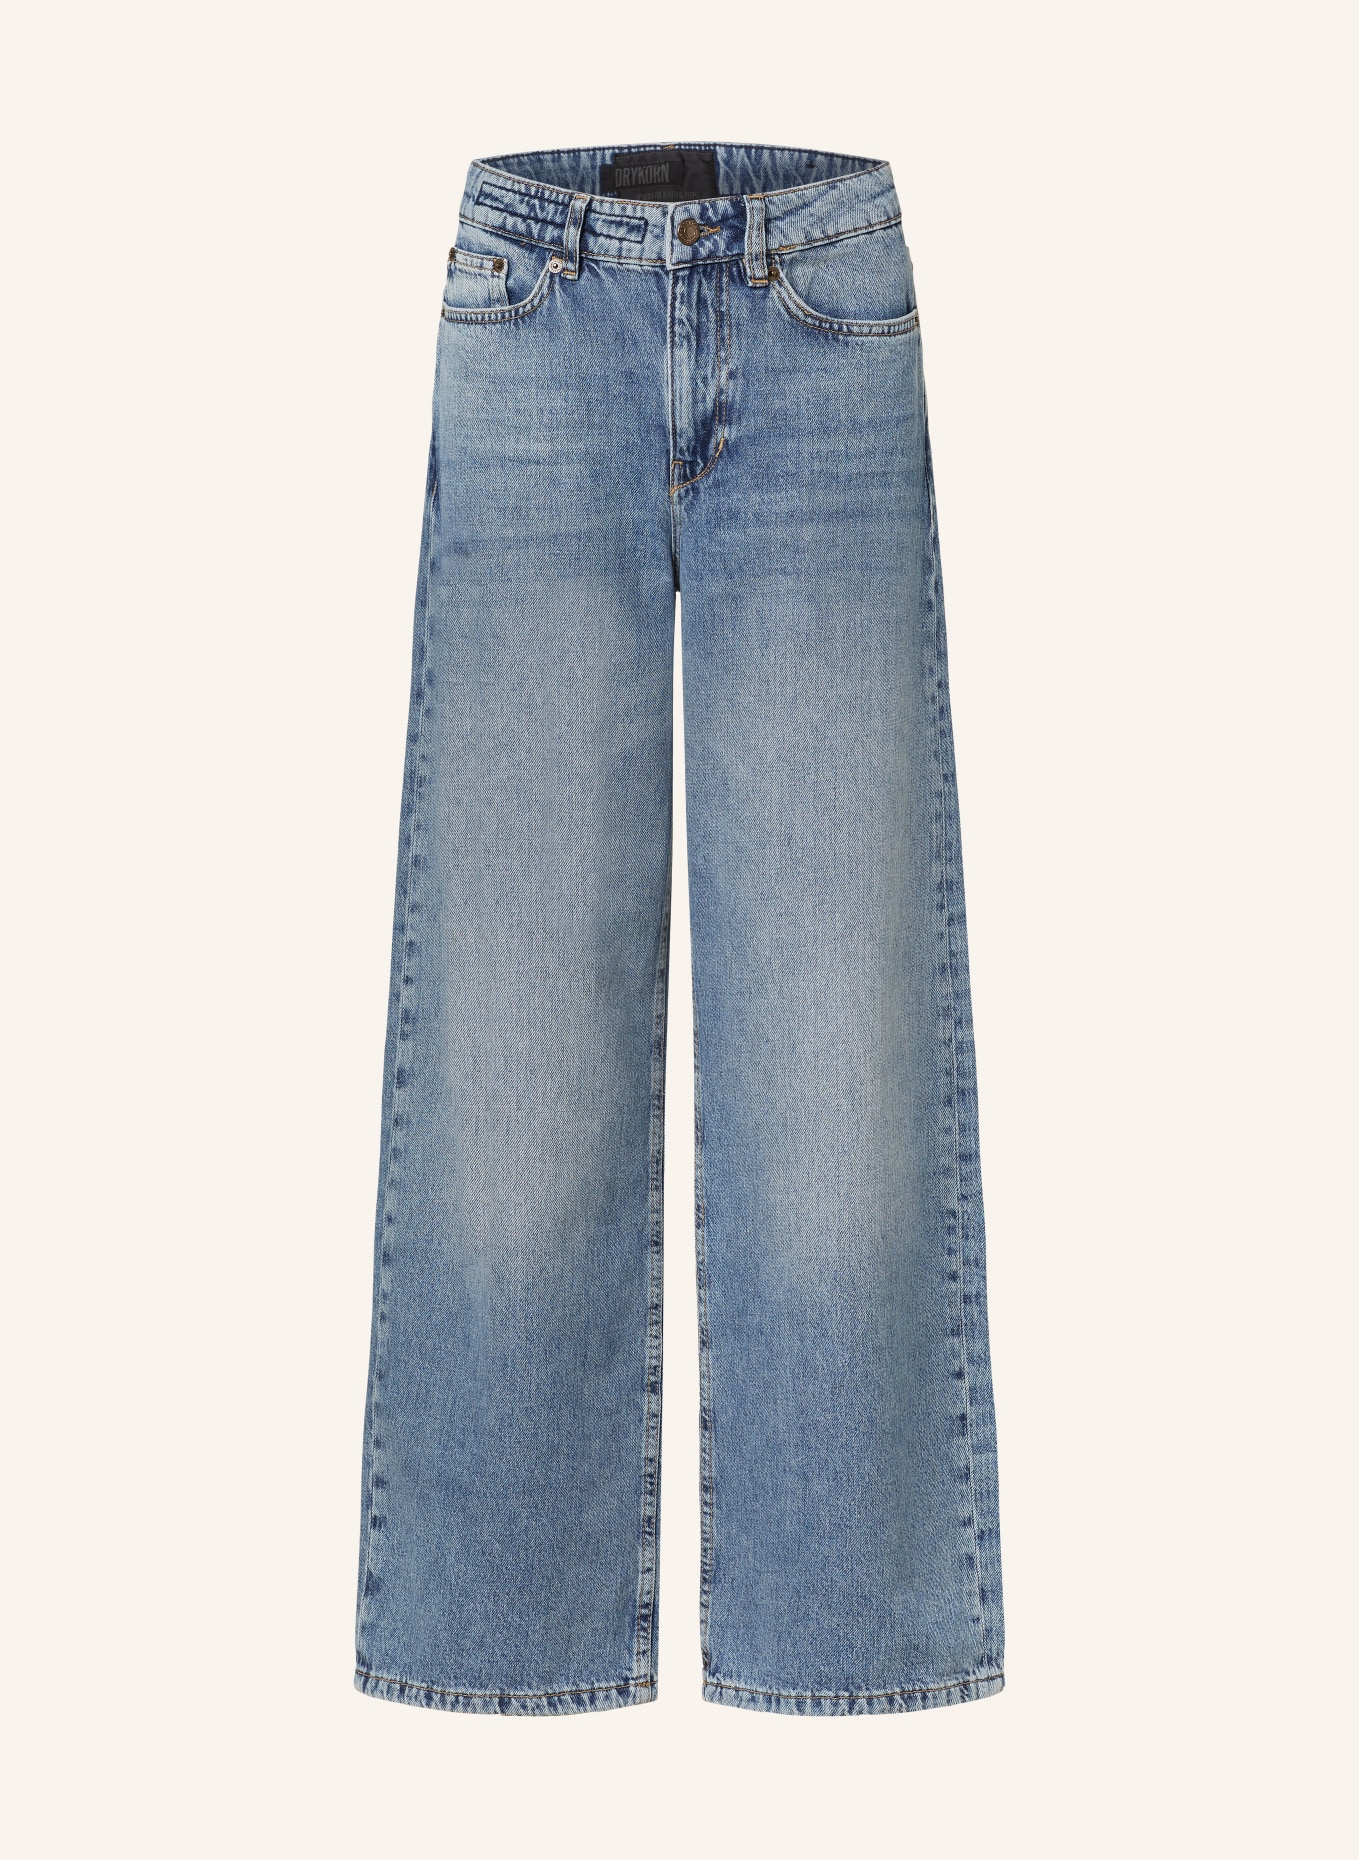 DRYKORN Jeans-Culotte MEDLEY, Farbe: 3720 blau (Bild 1)